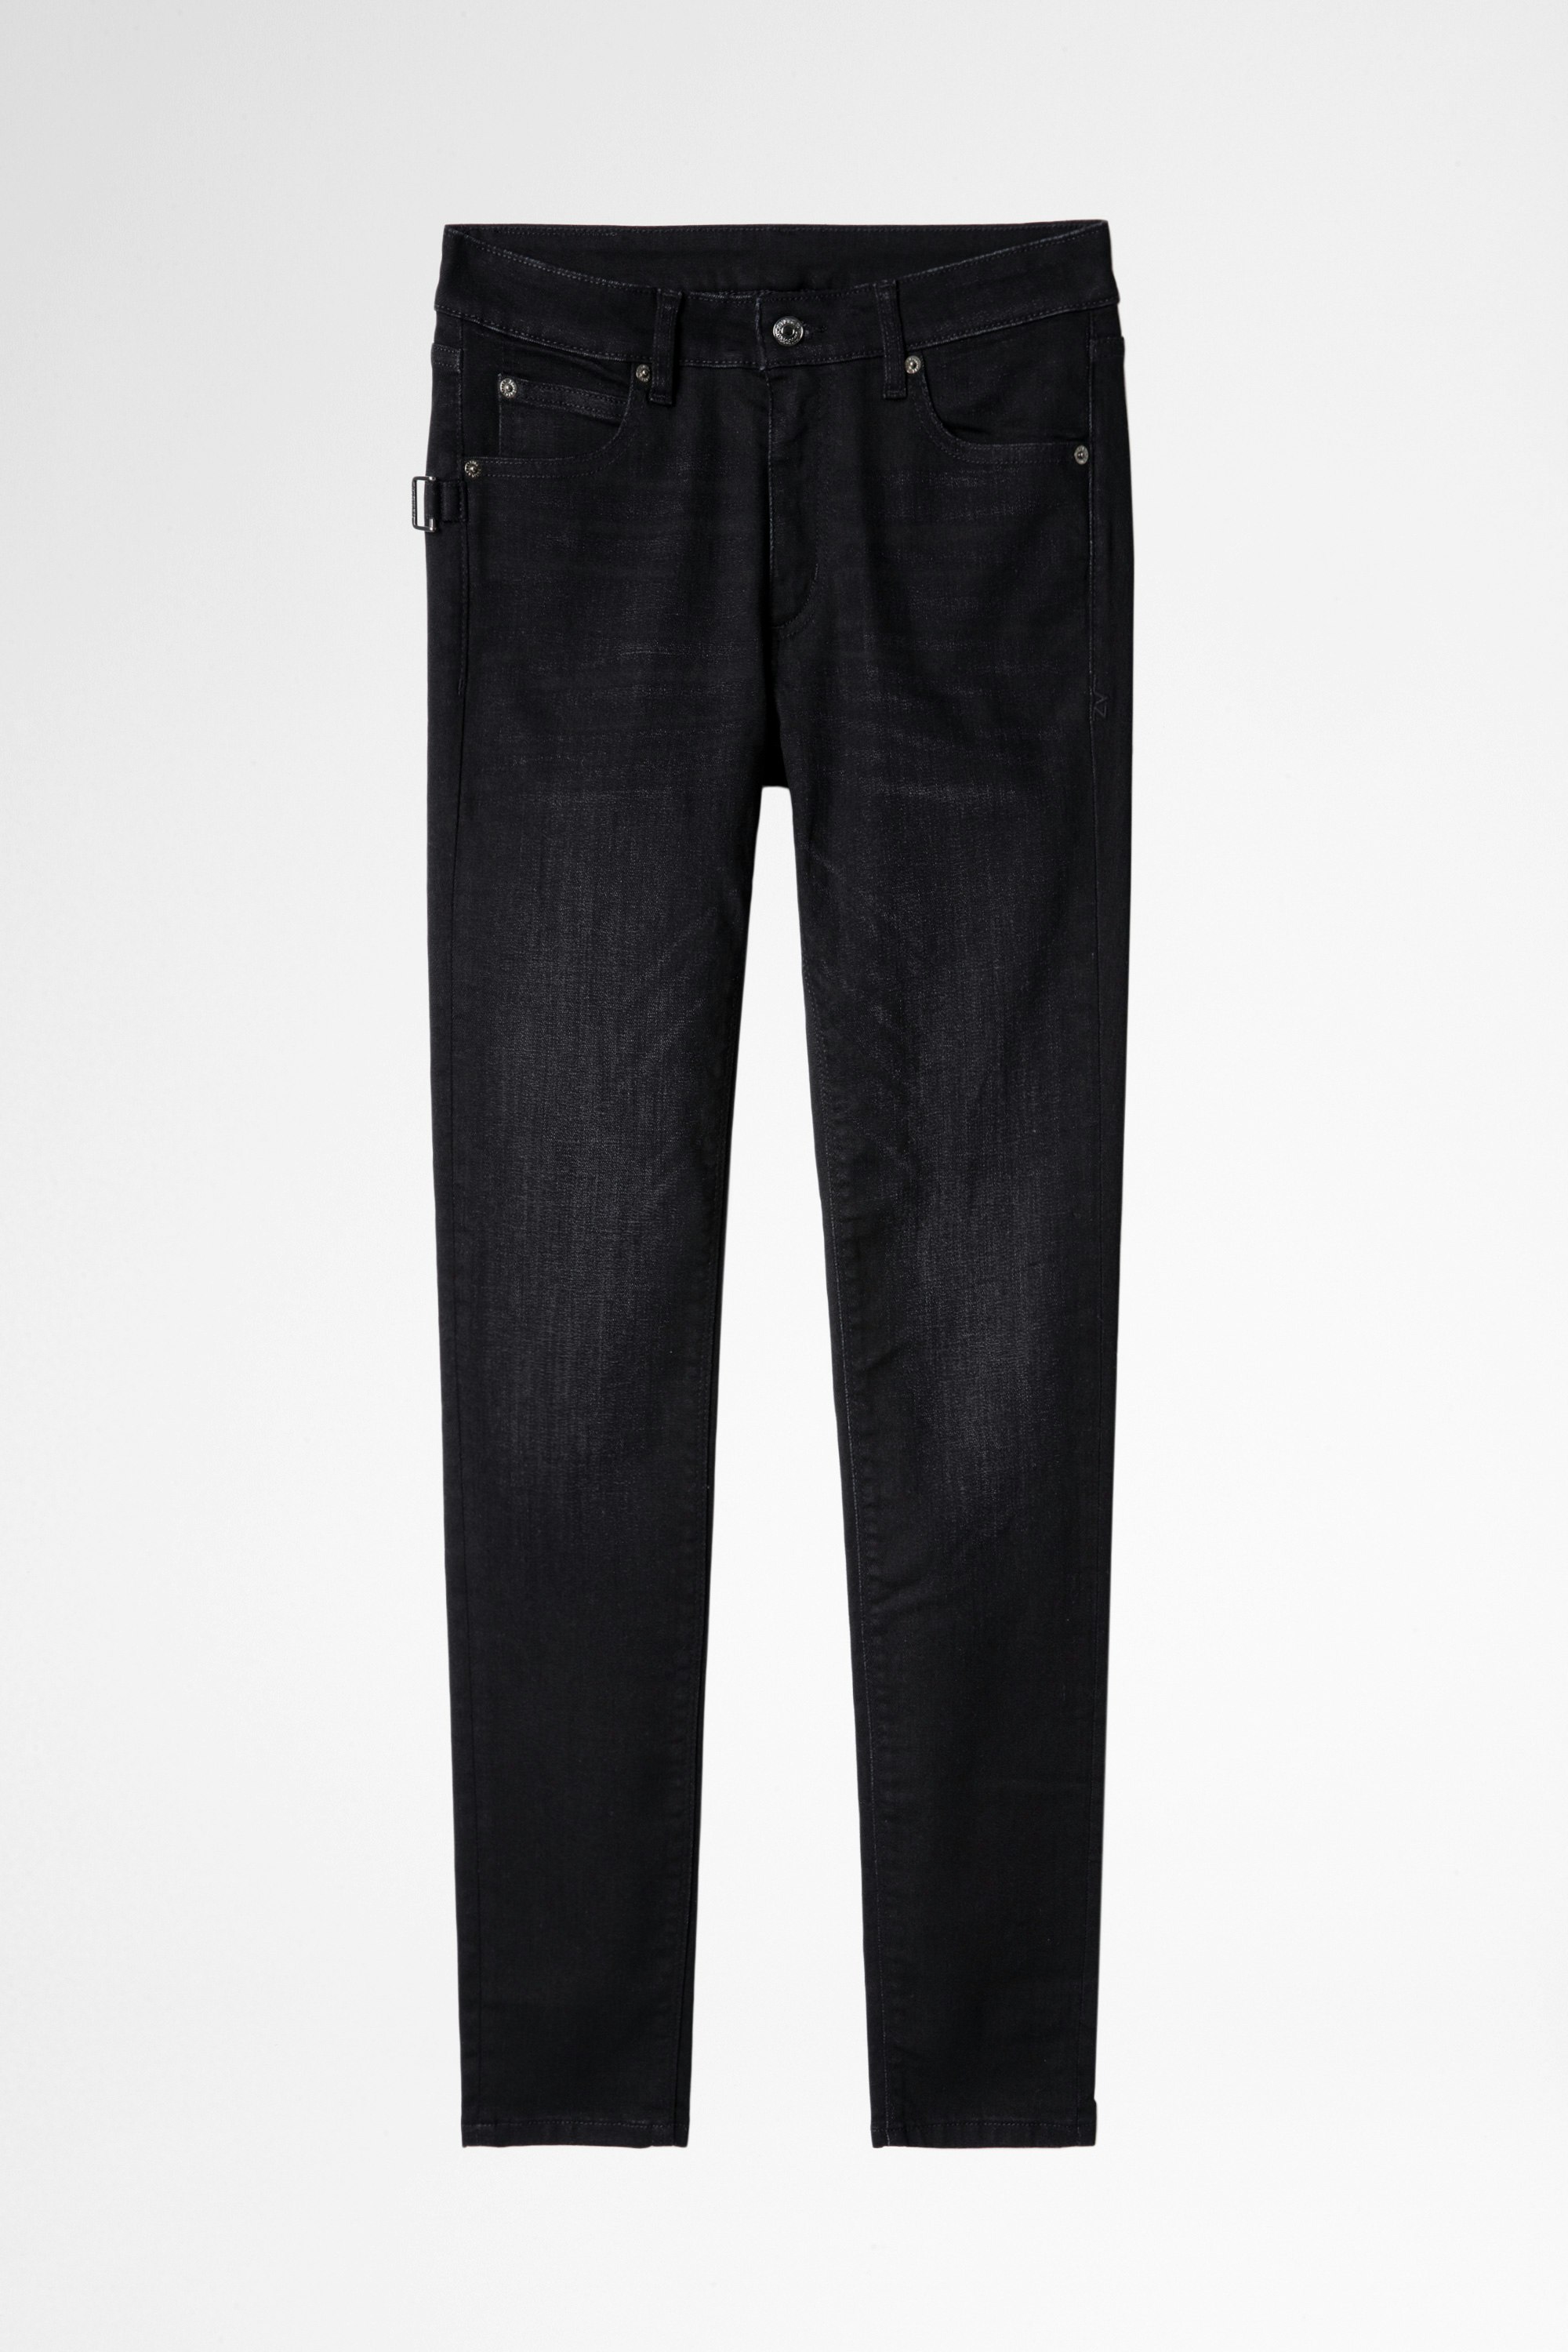 Jeans Ever Damenjeans aus dunkelgrauem Denim. Hergestellt mit Fasern aus biologischem Anbau